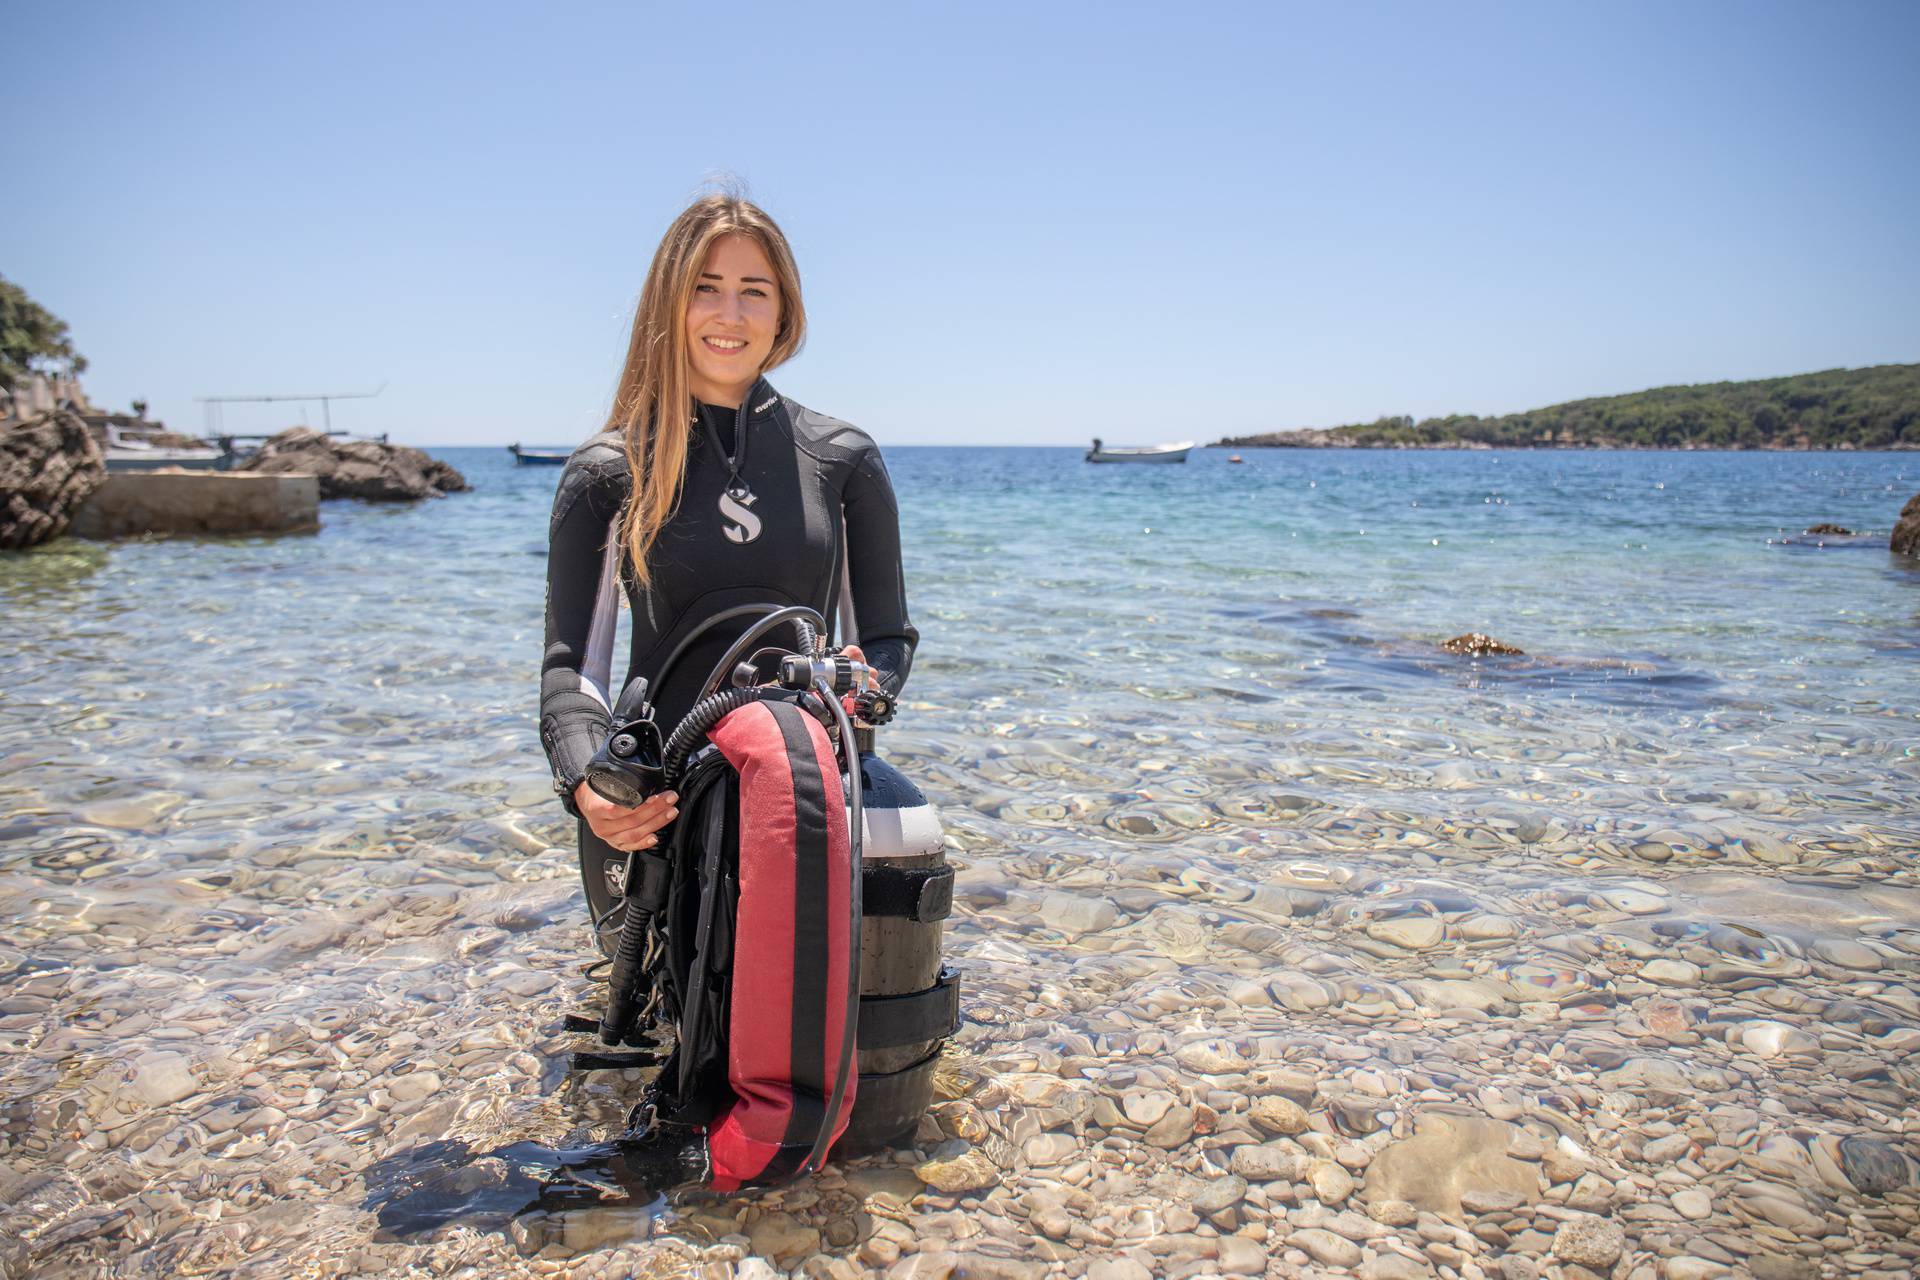 Ekoaktivistica Klara: U moru na pet metara dubine plivalo je smeće, morala sam nešto učiniti